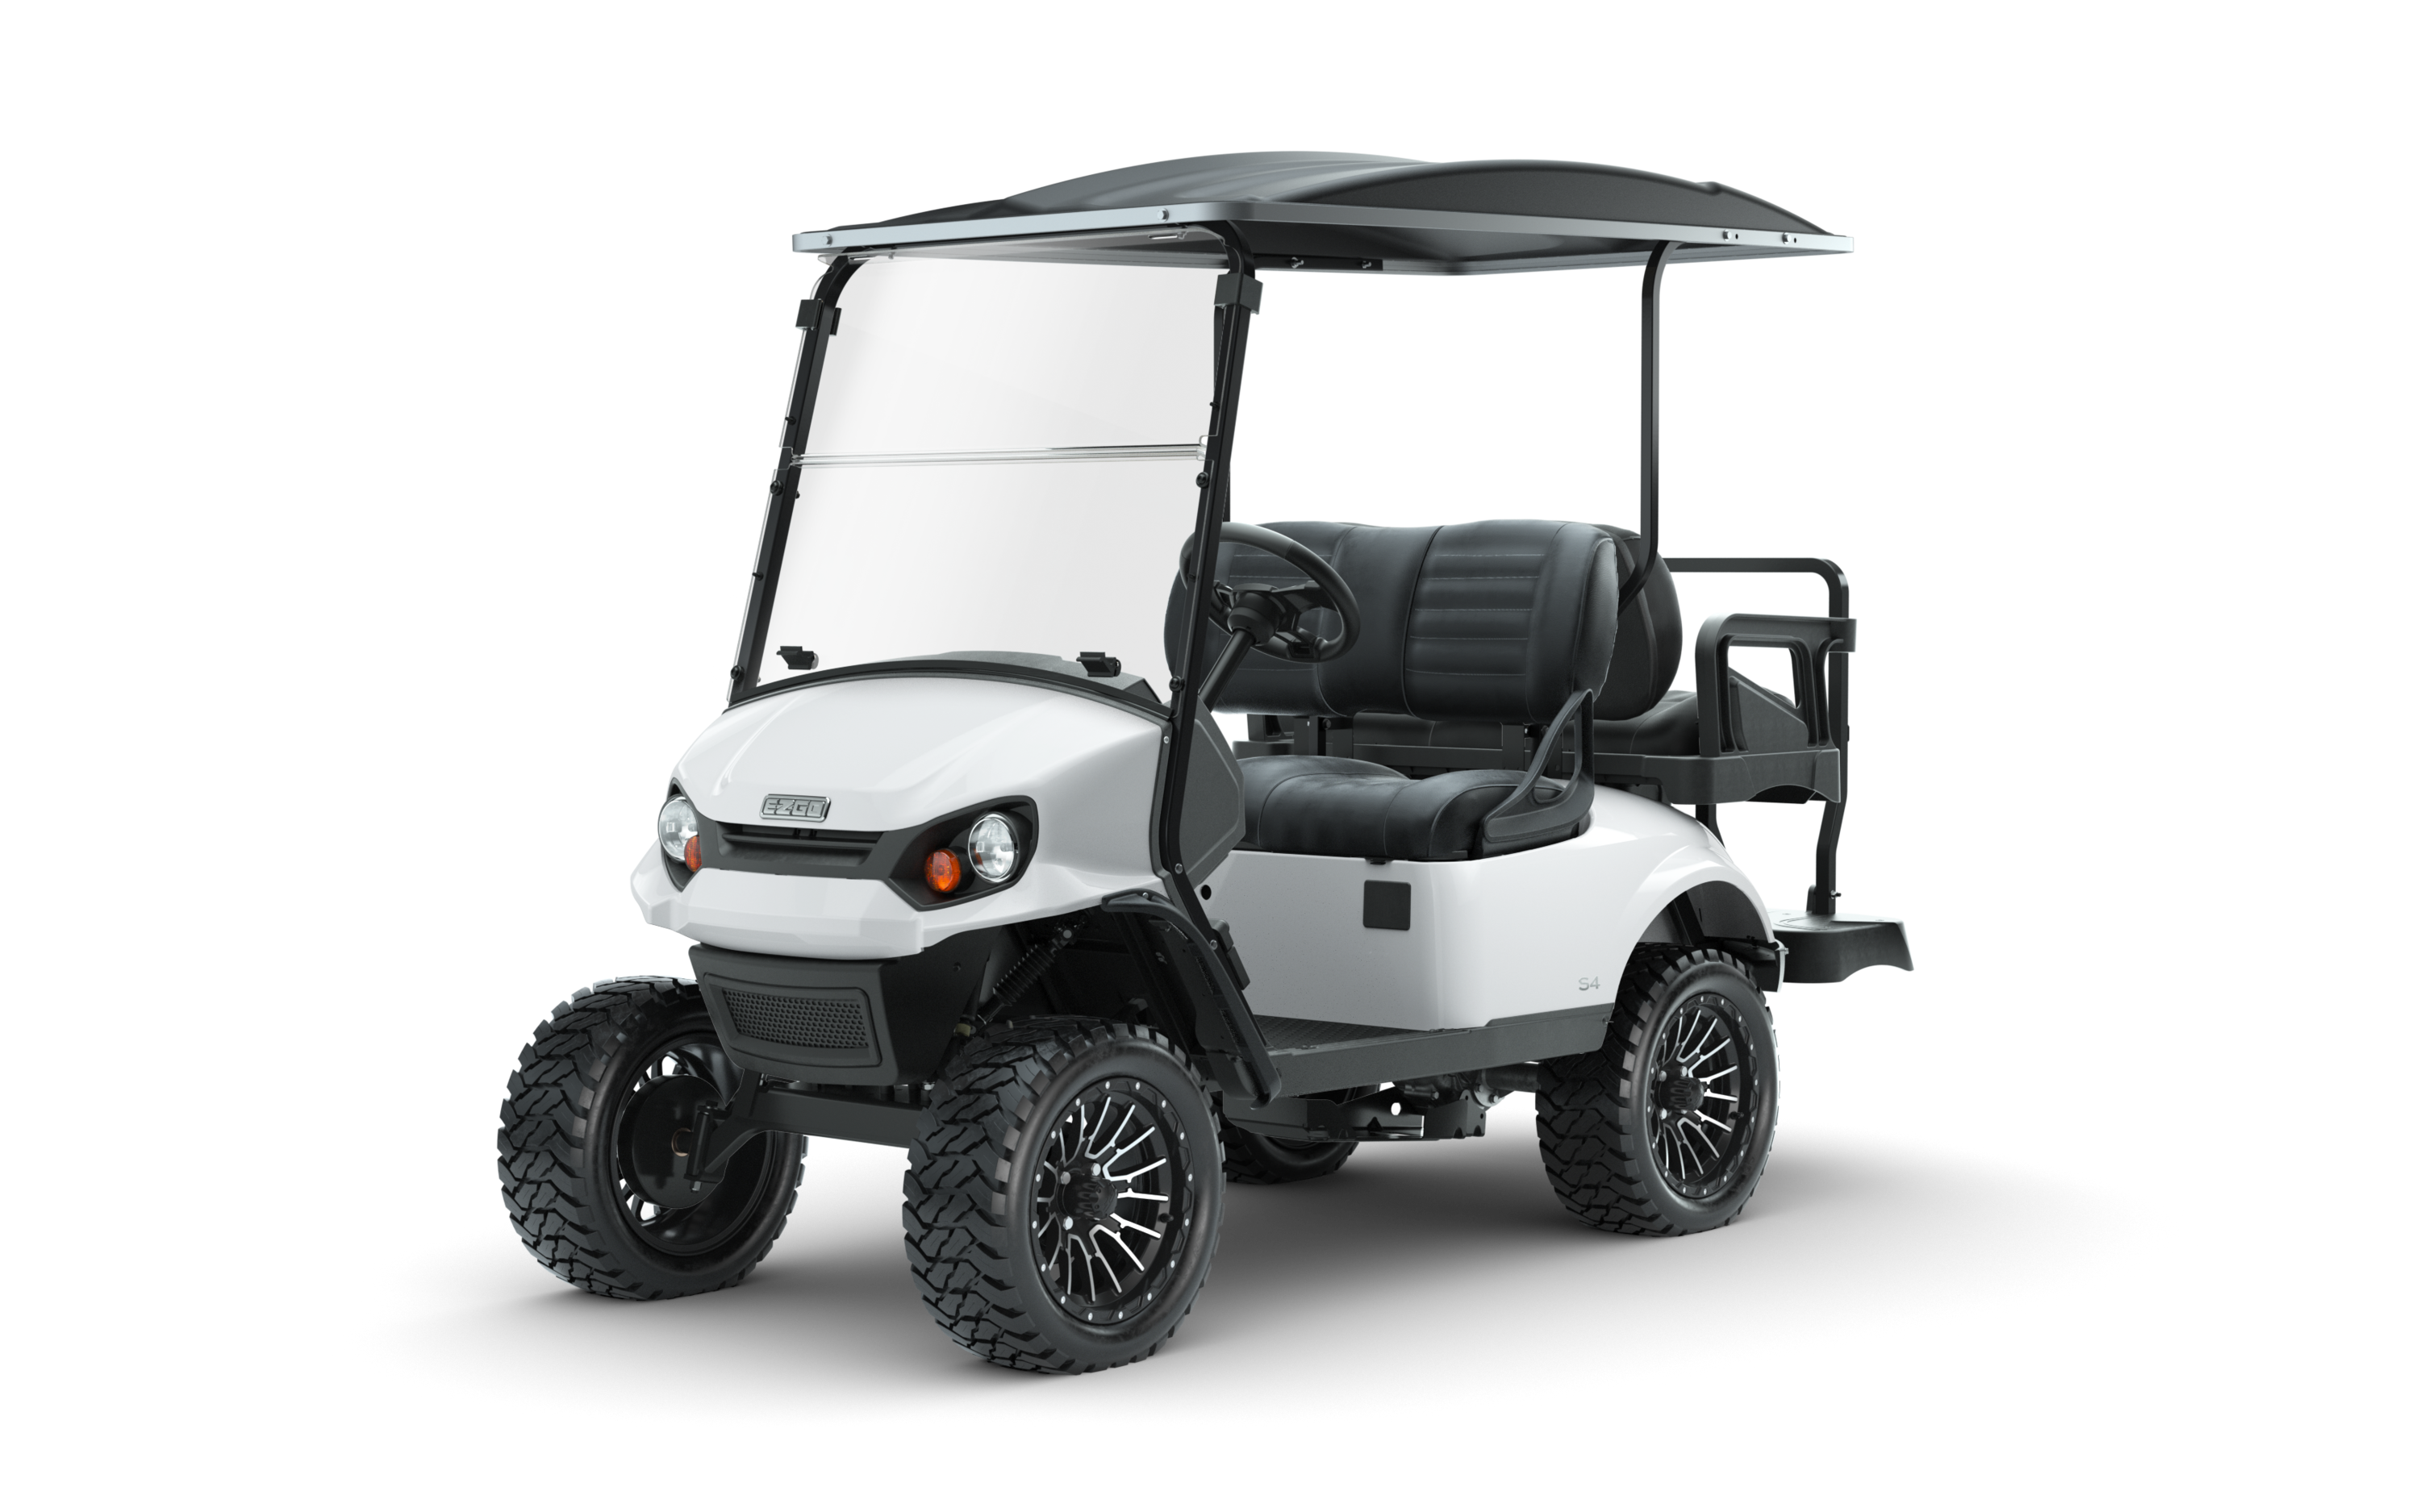 E-Z-GO Express 4 for sale in Premier Golf Cars, Lake Havasu City, Arizona